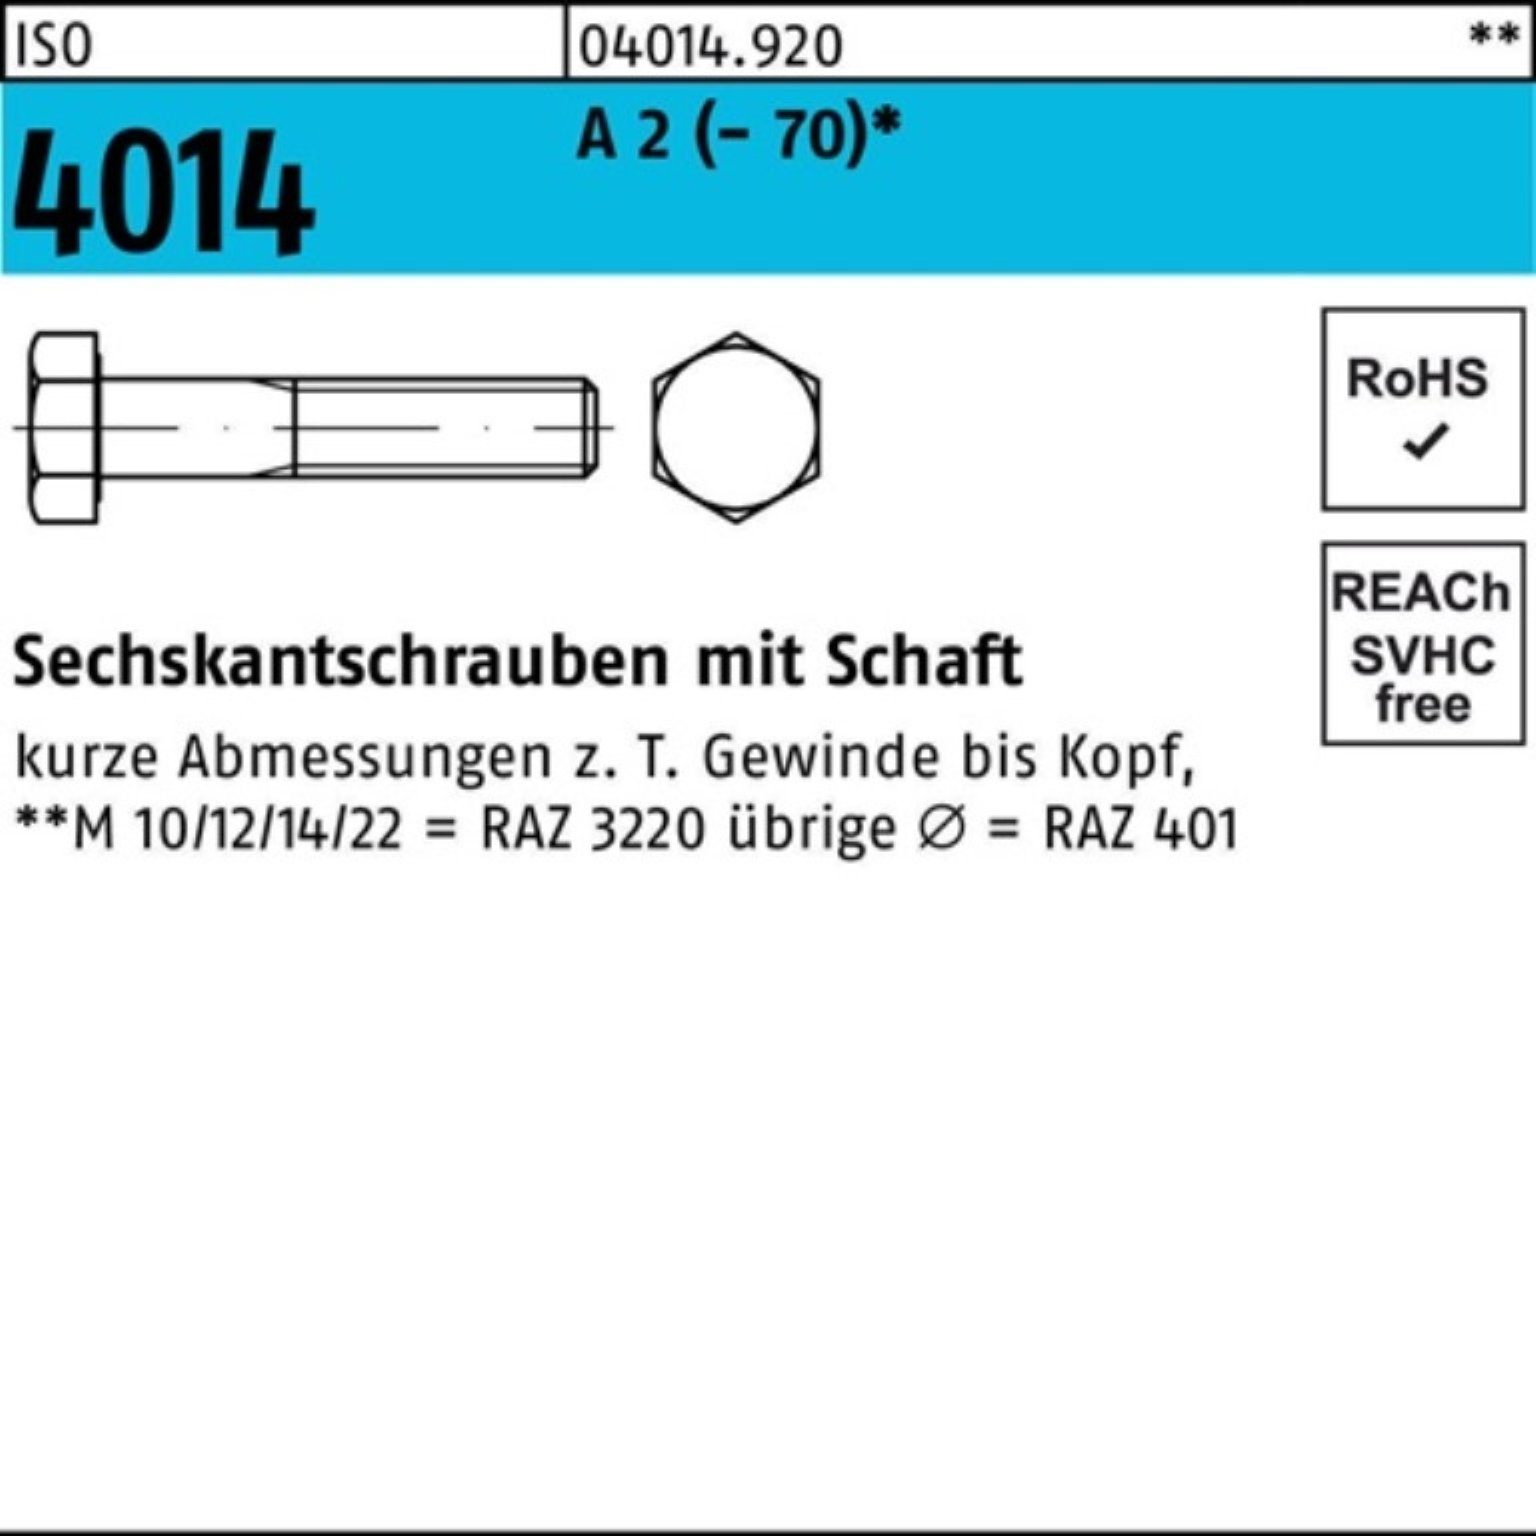 ISO Pack A Schaft 100 Sechskantschraube M8x 4014 (70) Bufab St 100er 60 Sechskantschraube 2